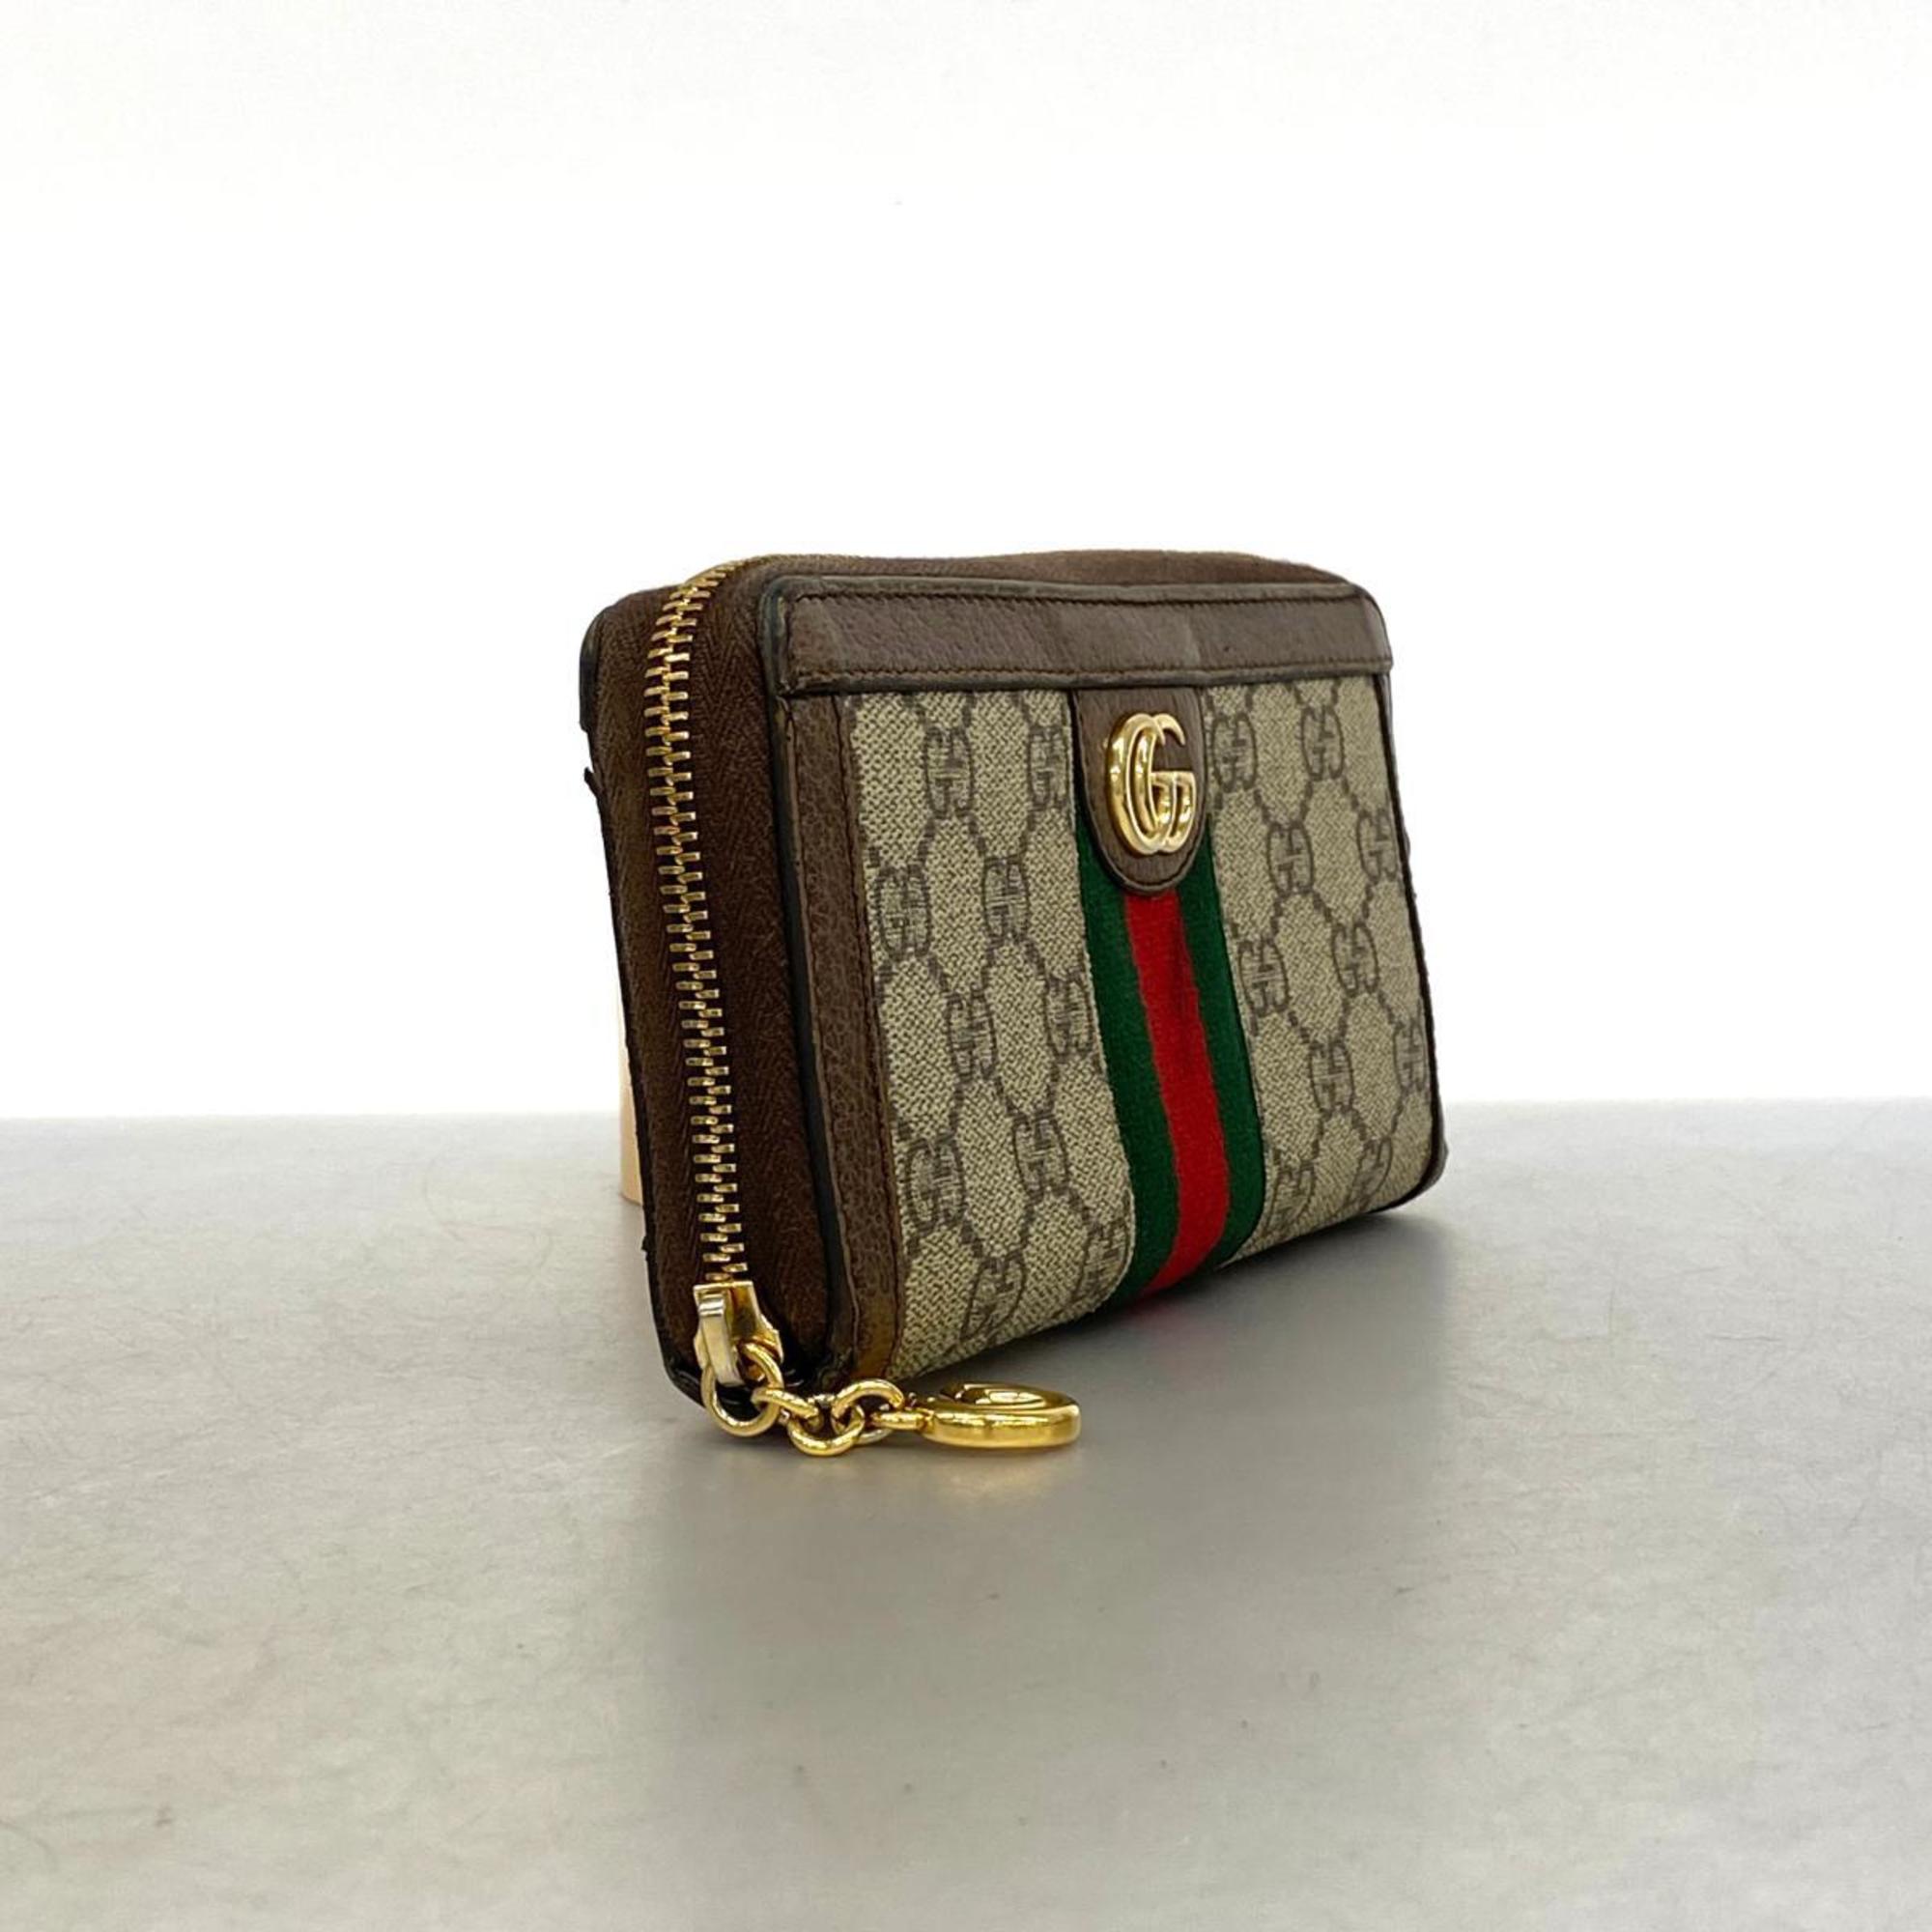 Gucci Ophidia Long Wallet 523154 Leather Brown Beige Men's Women's